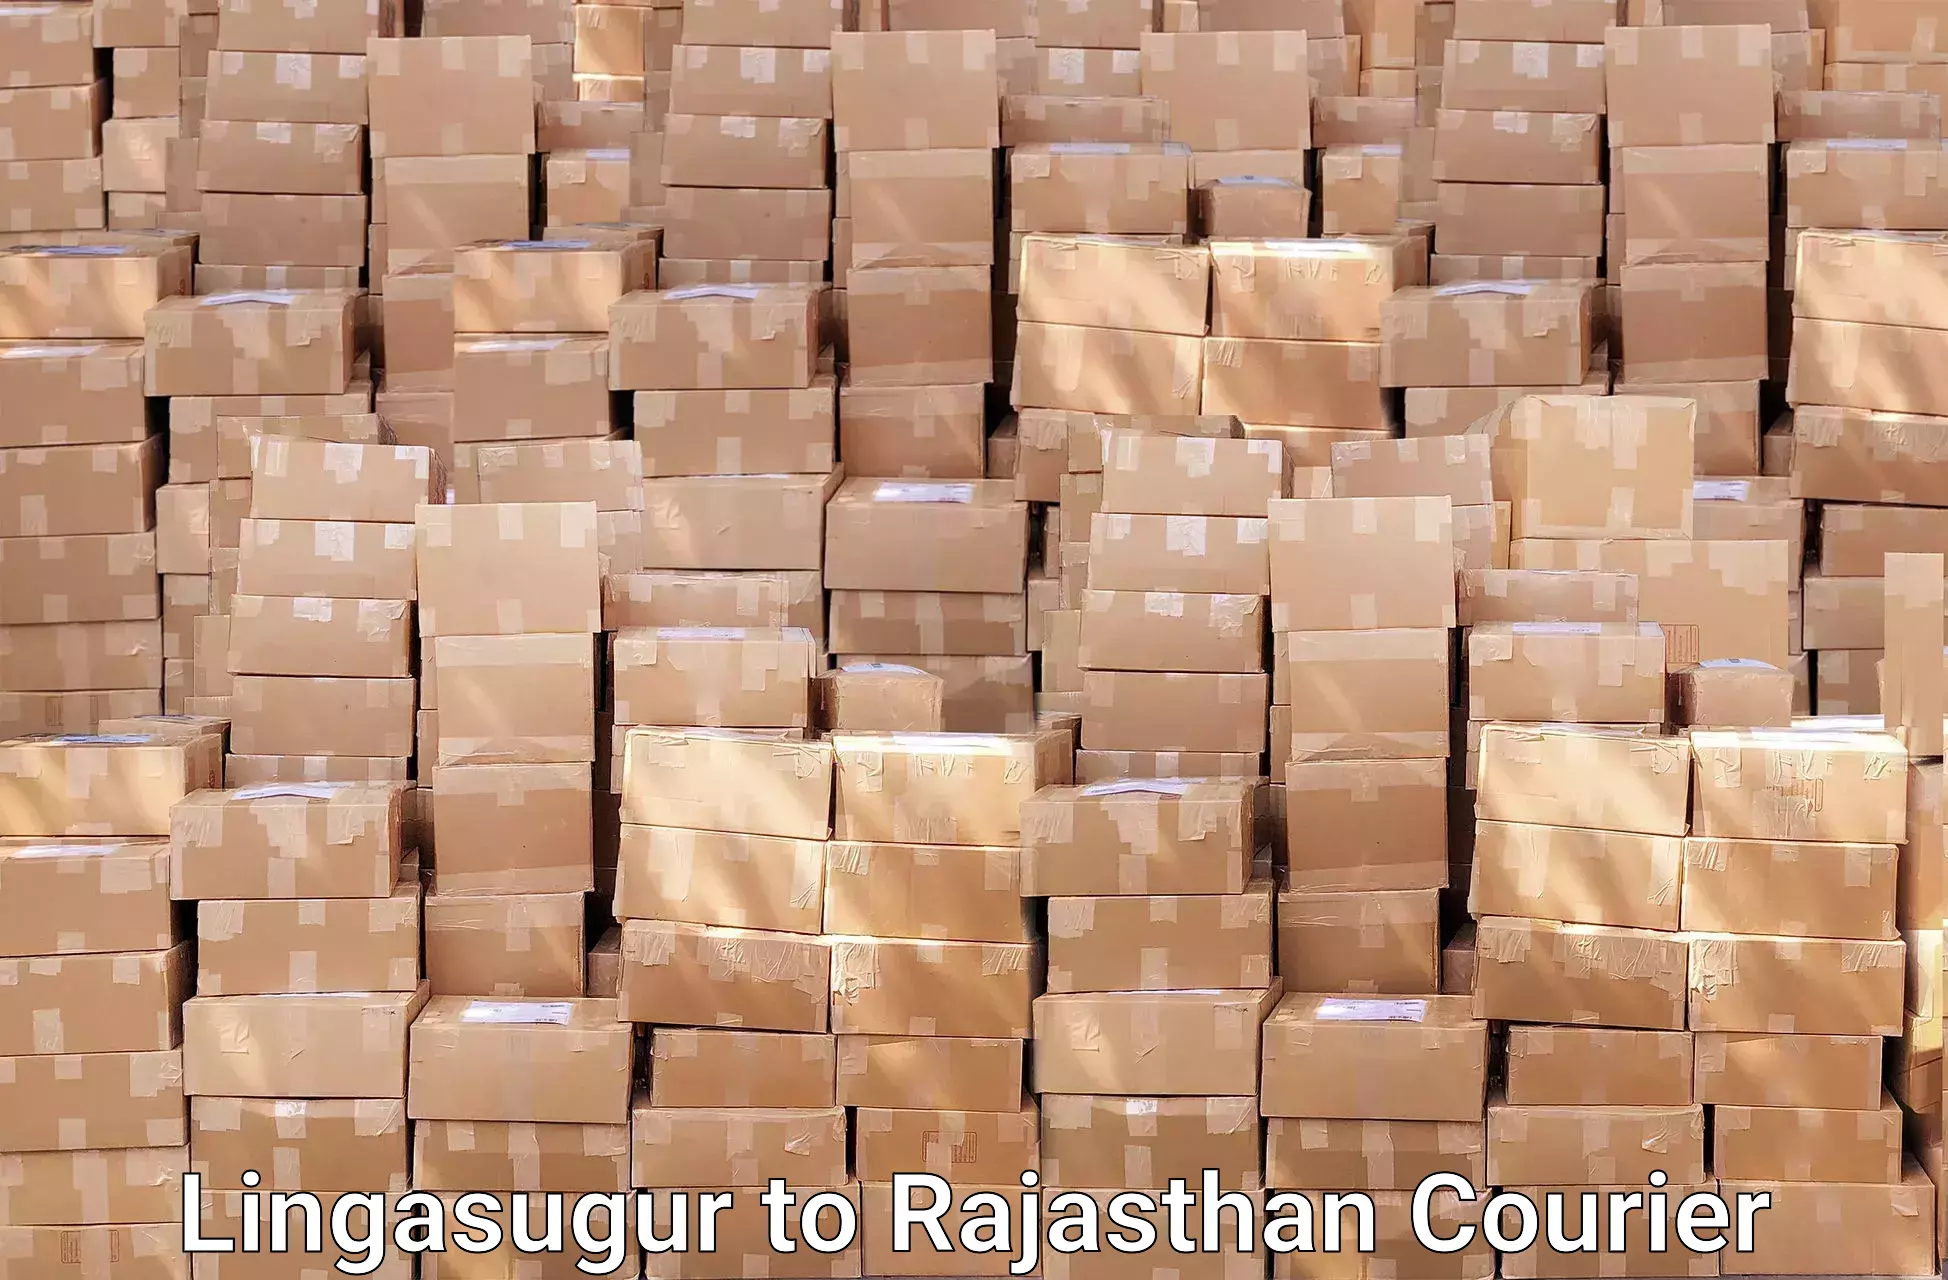 Moving and storage services Lingasugur to Gudha Gorji